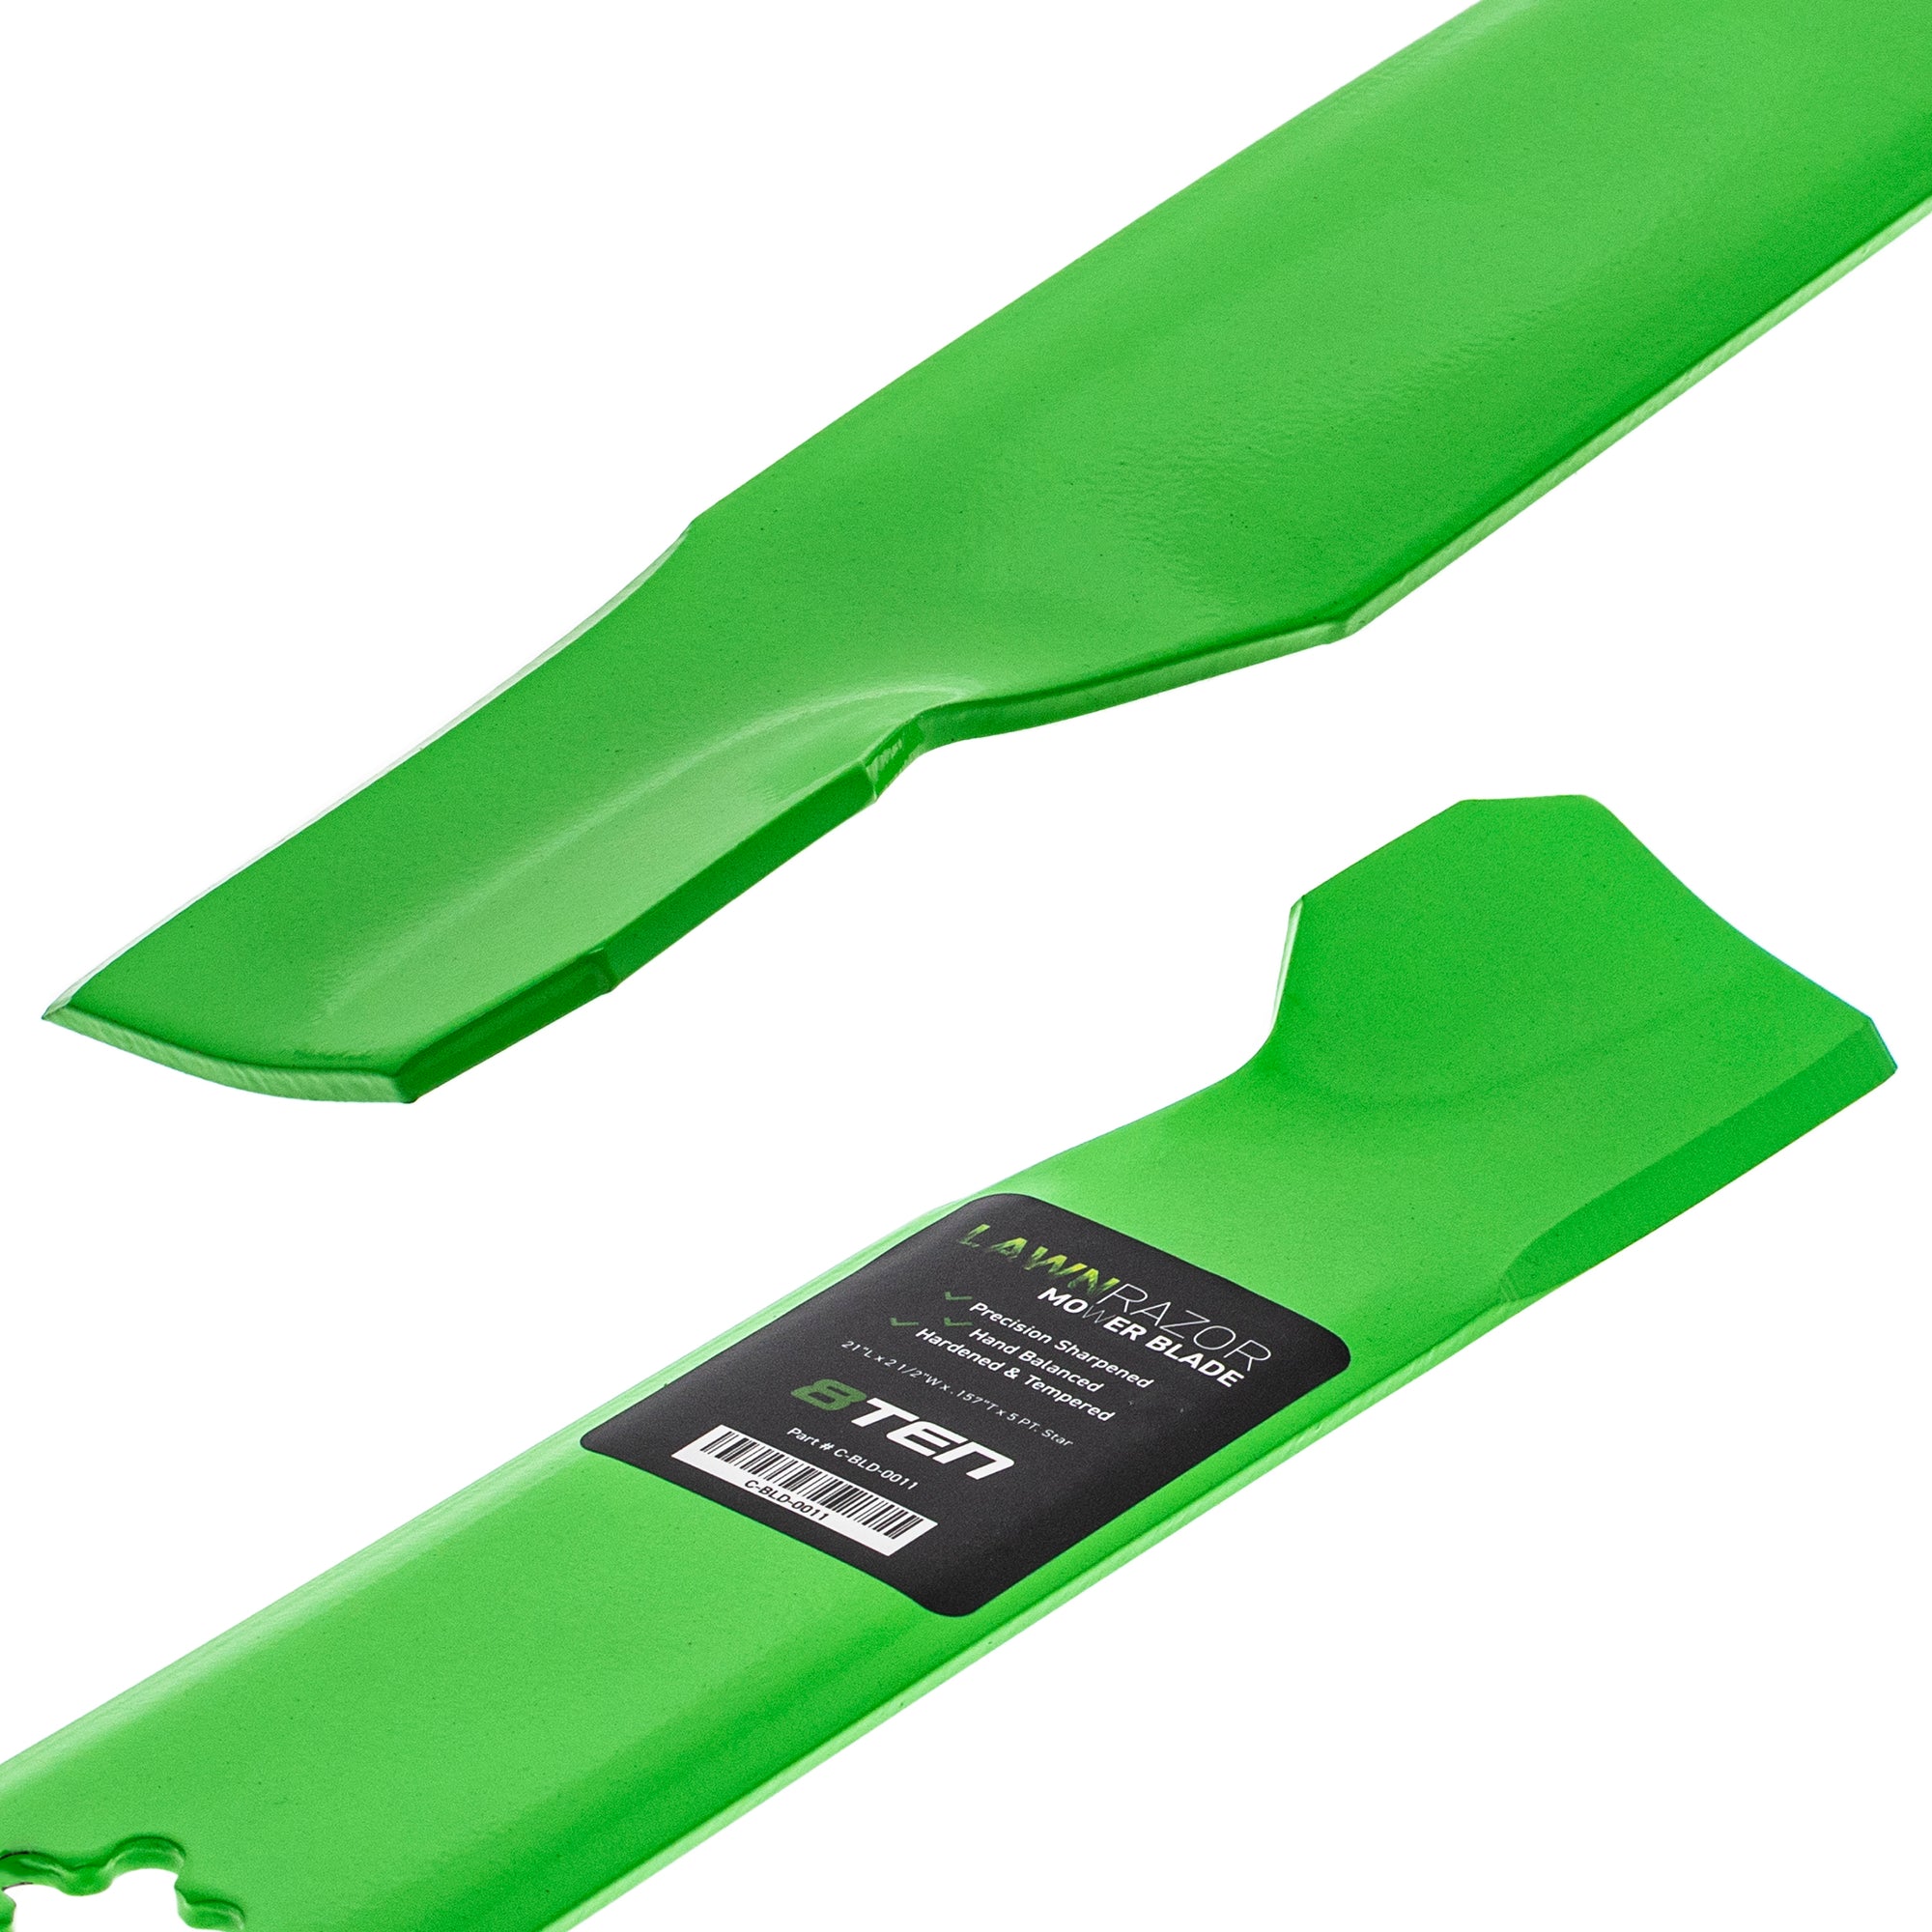 Deck Spindle & Mower Blade Kit For Poulan Pro Poulan Ariens MK1002065